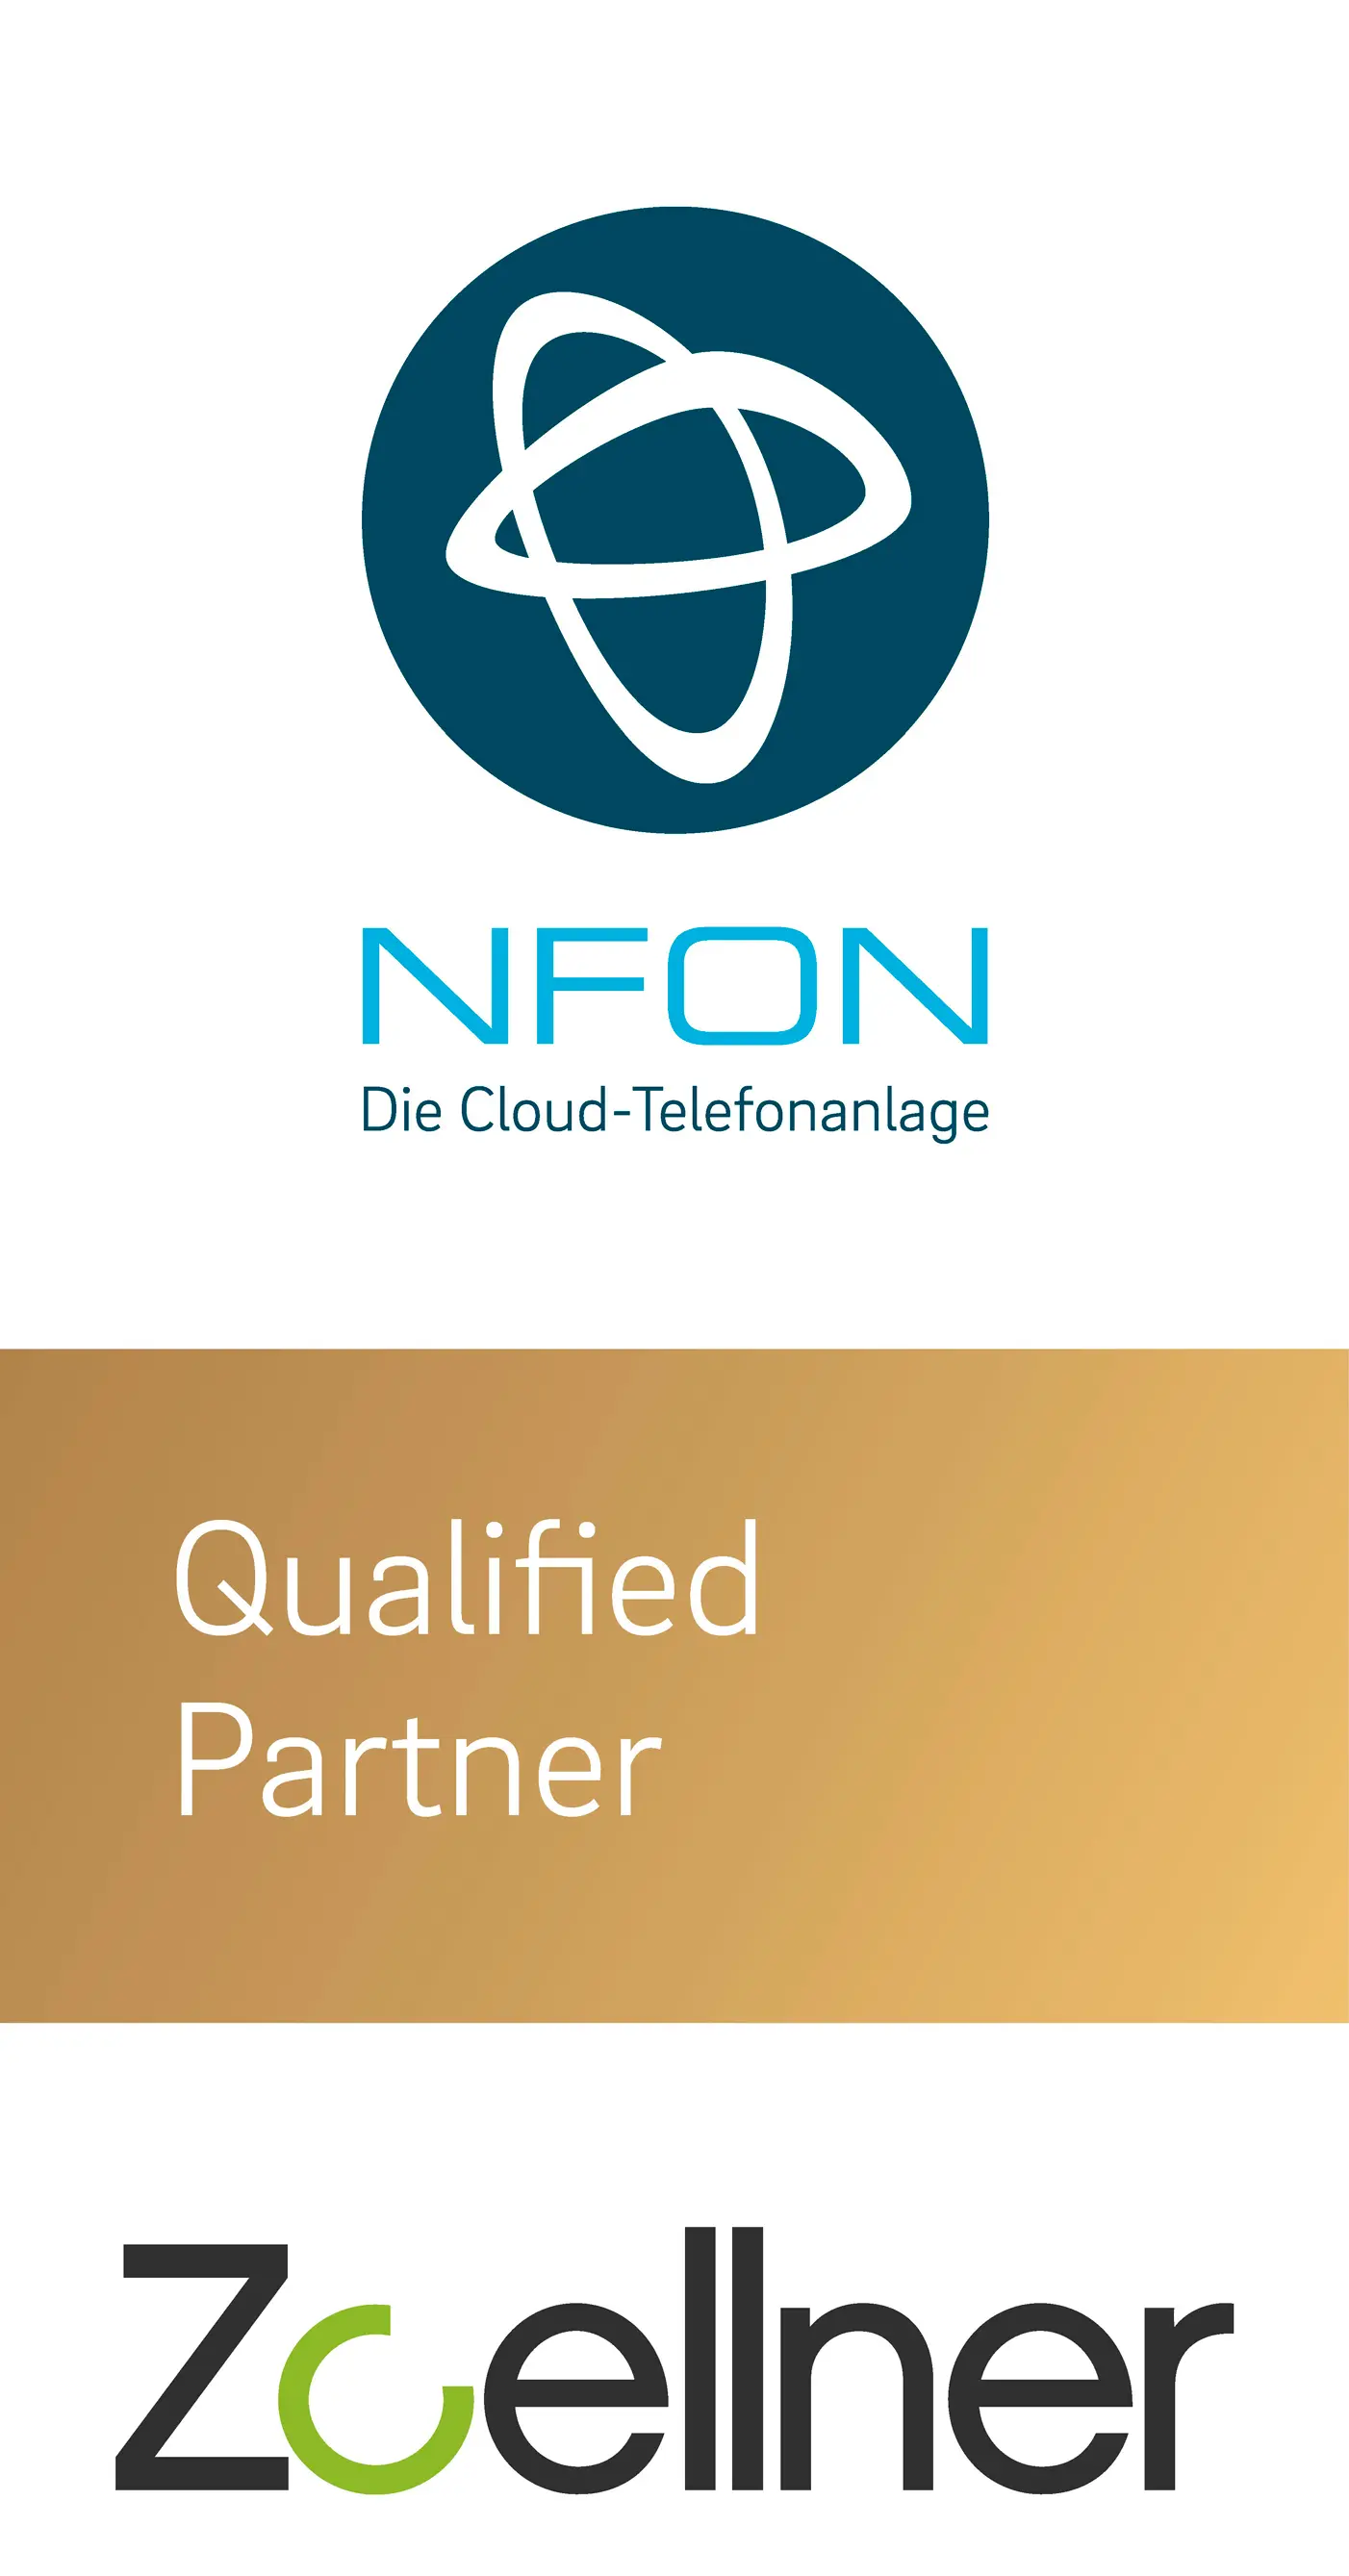 Hier geht zur Cloud-Telefonanlage von NFON!